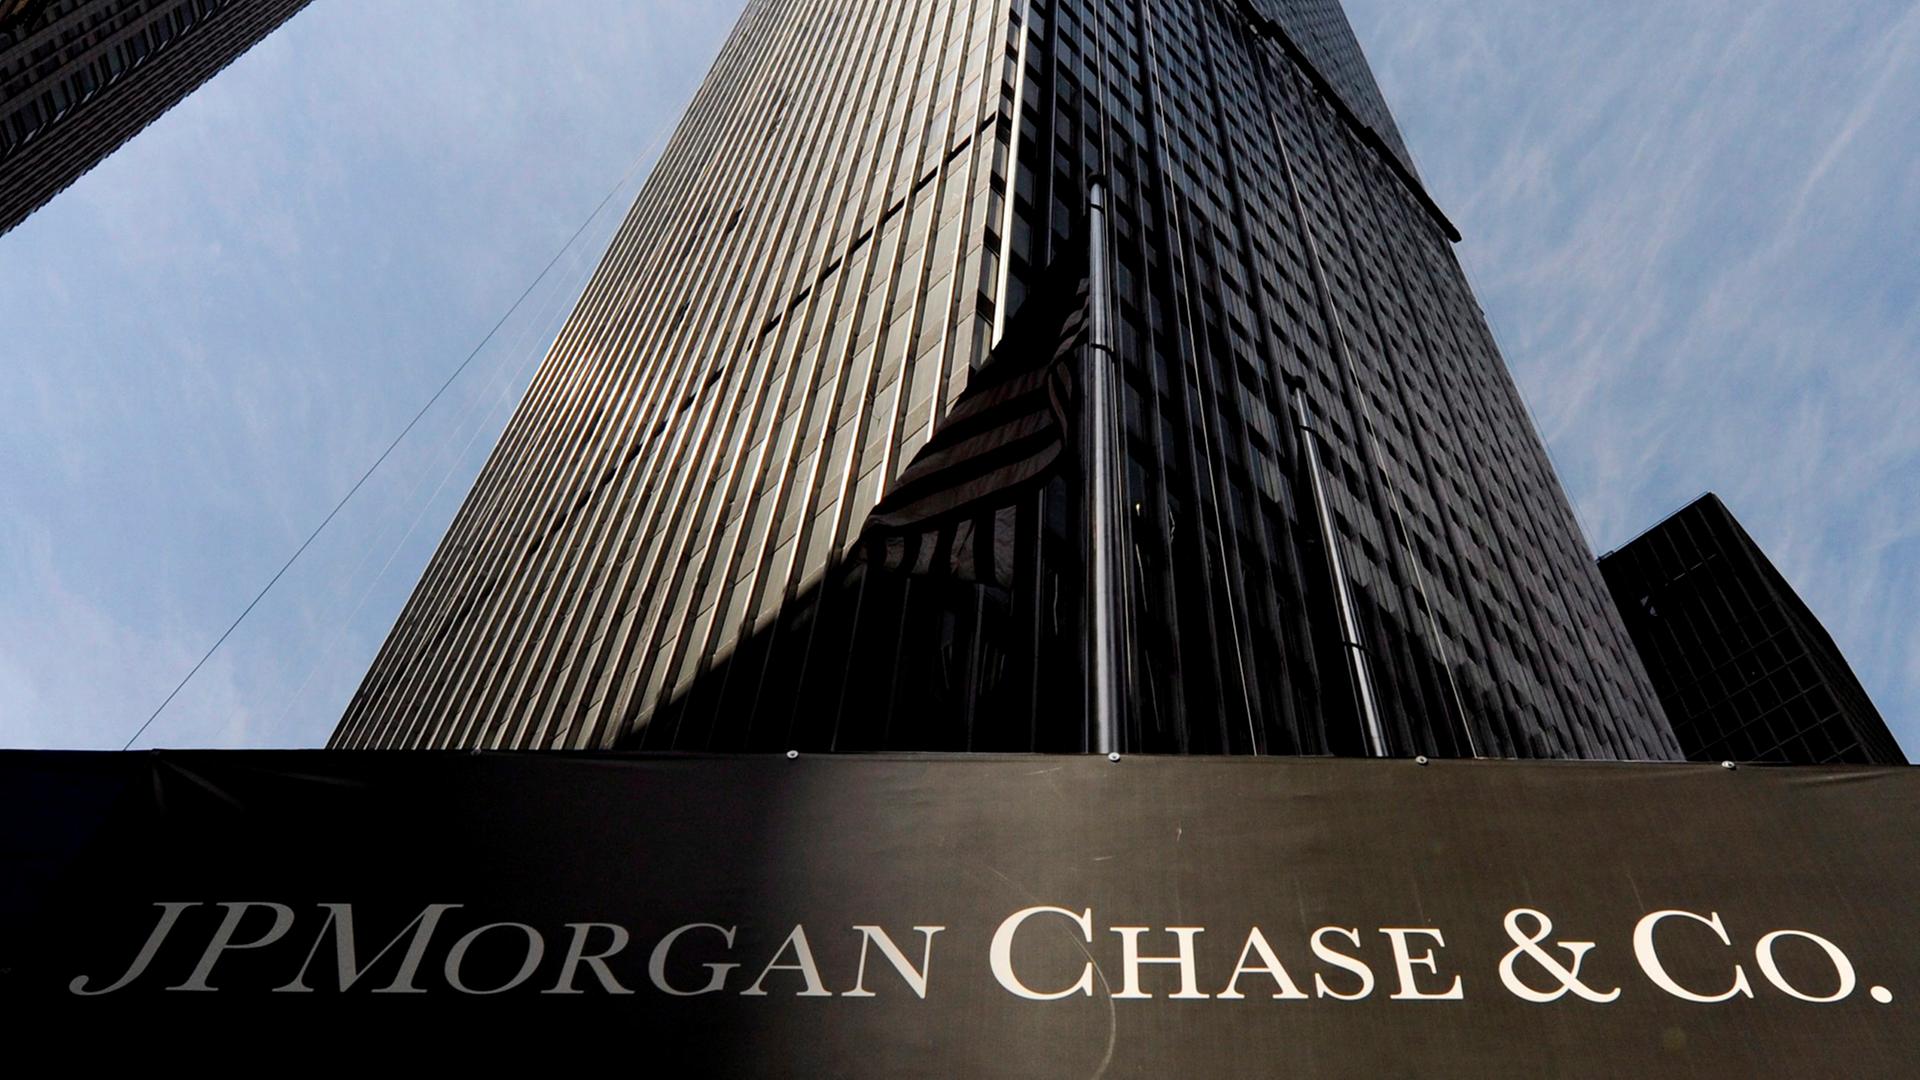 Das Gebäude der Bank JPMorgan Chase in New York